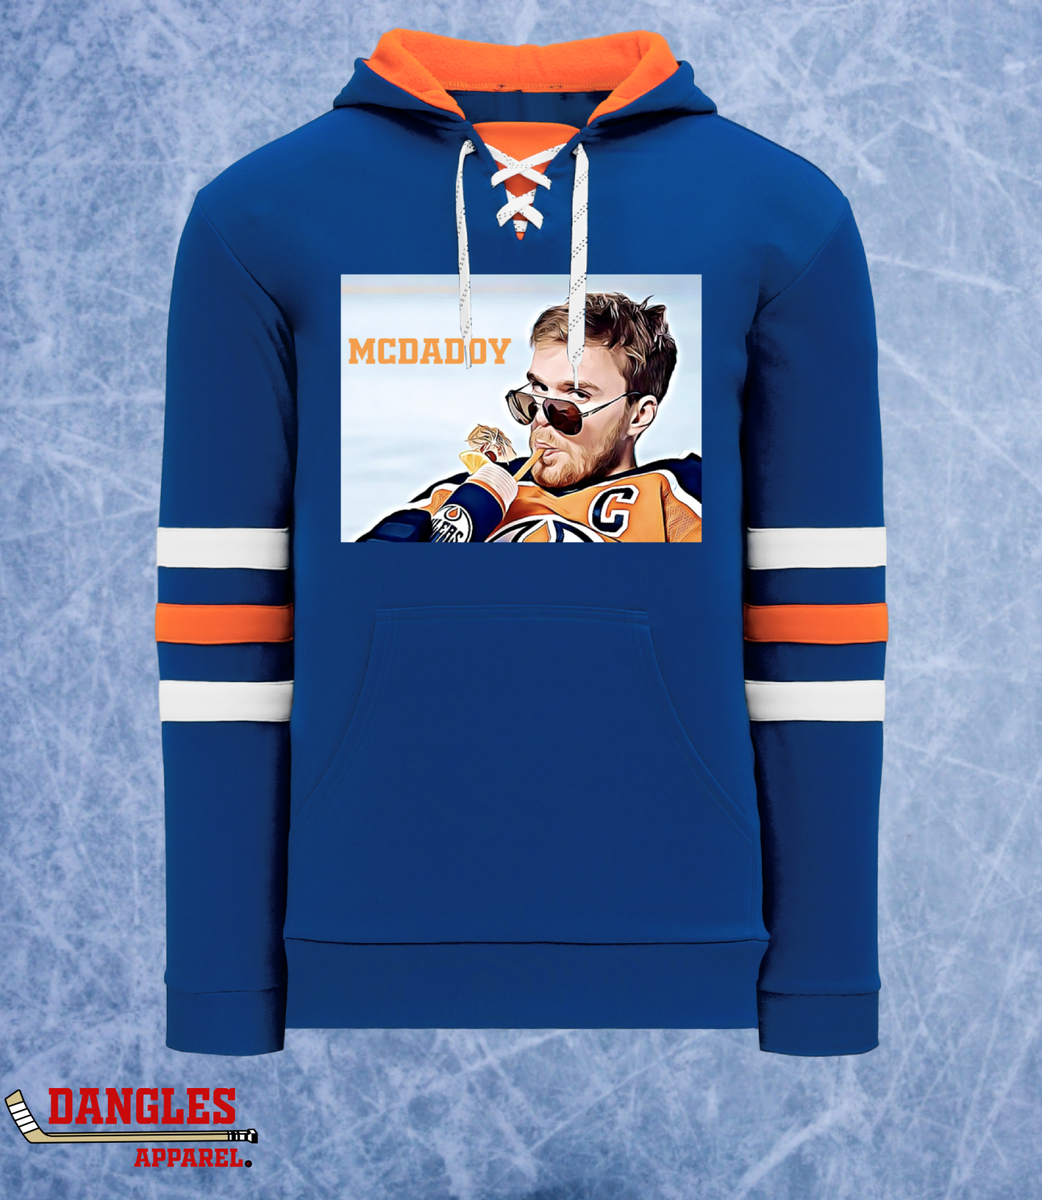 Buy the McJesus Pullover Sweatshirt Hoodie - Slingshot Hockey